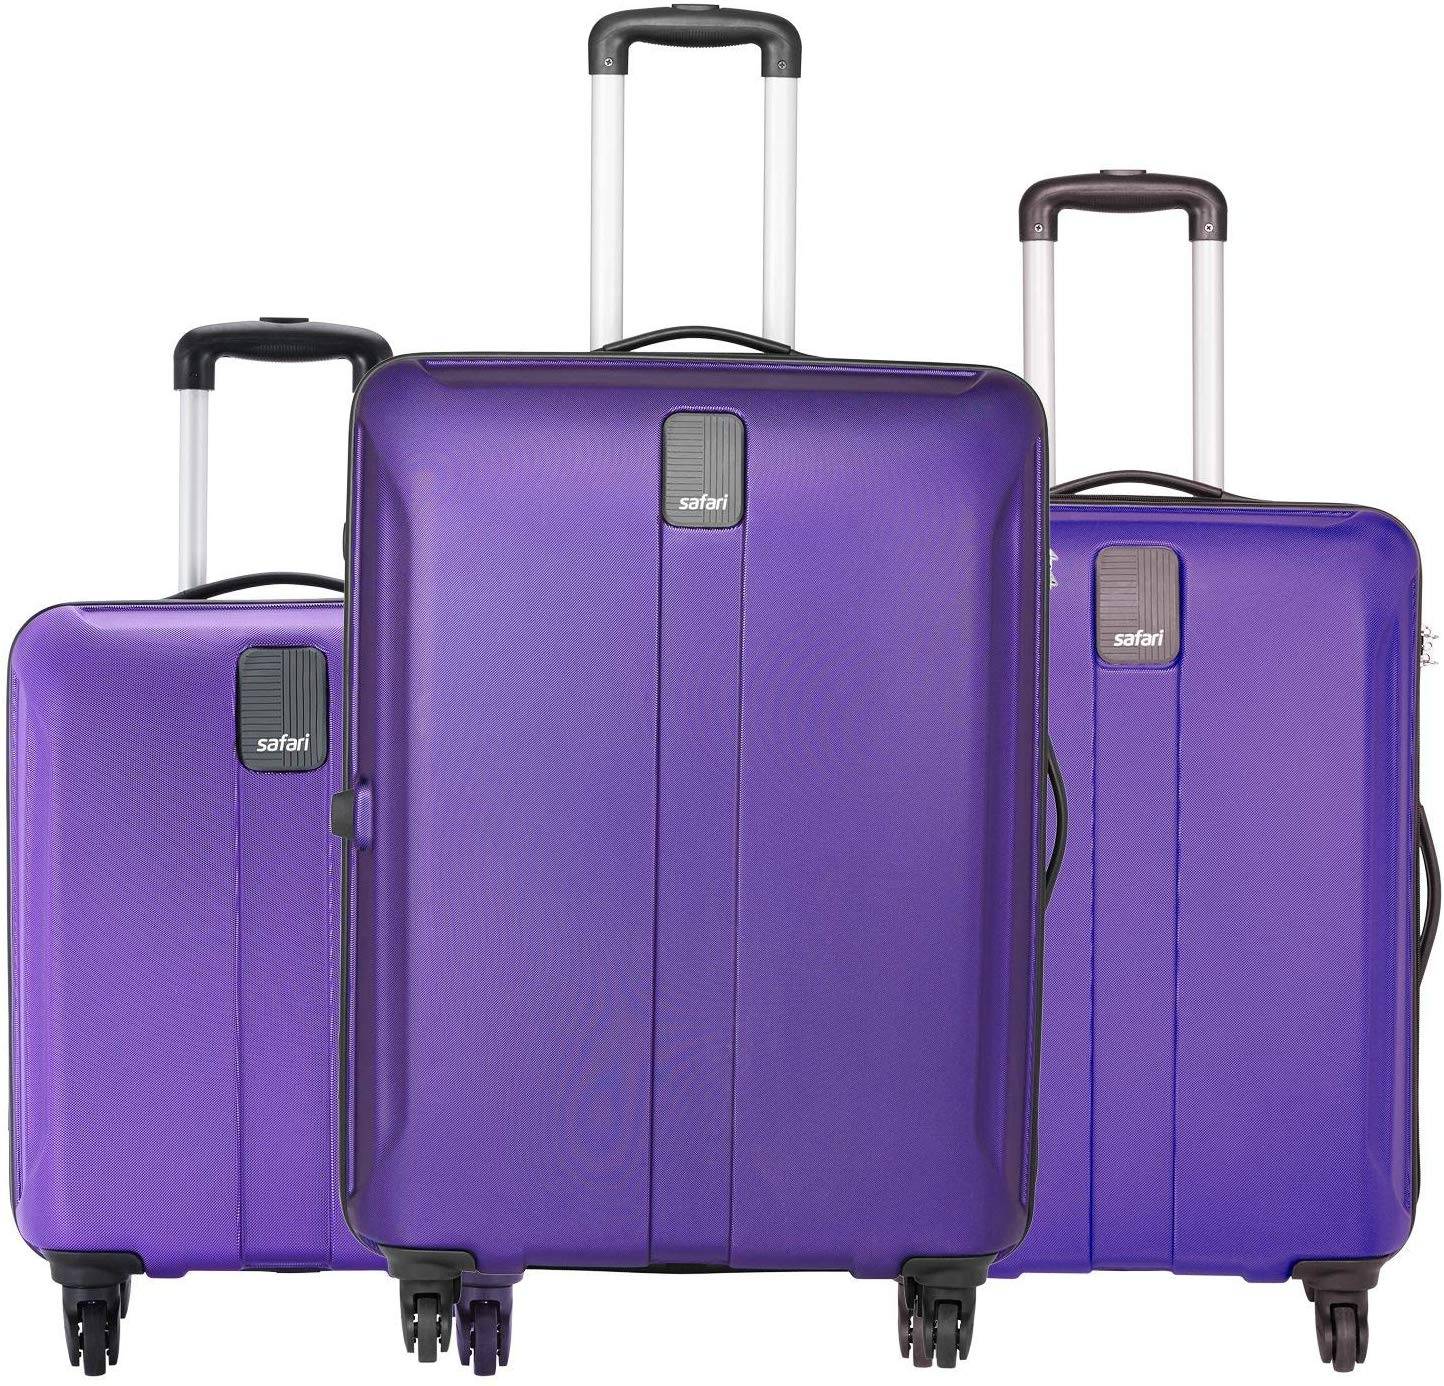 safari suitcase set